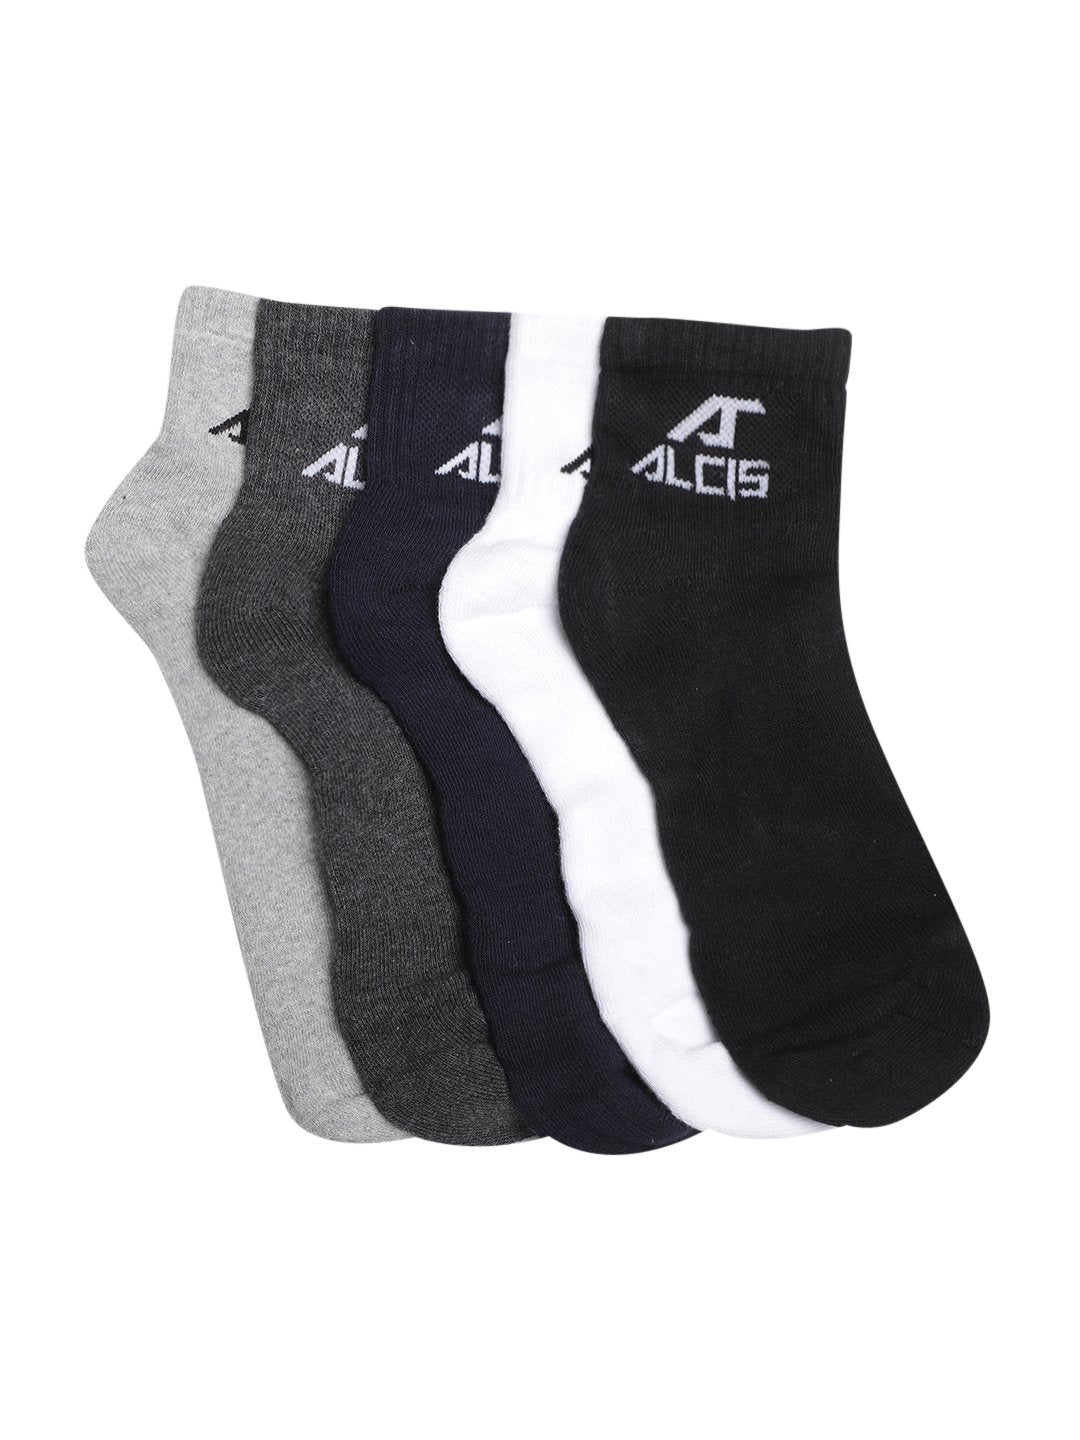 Alcis Pack Of 5 Socks